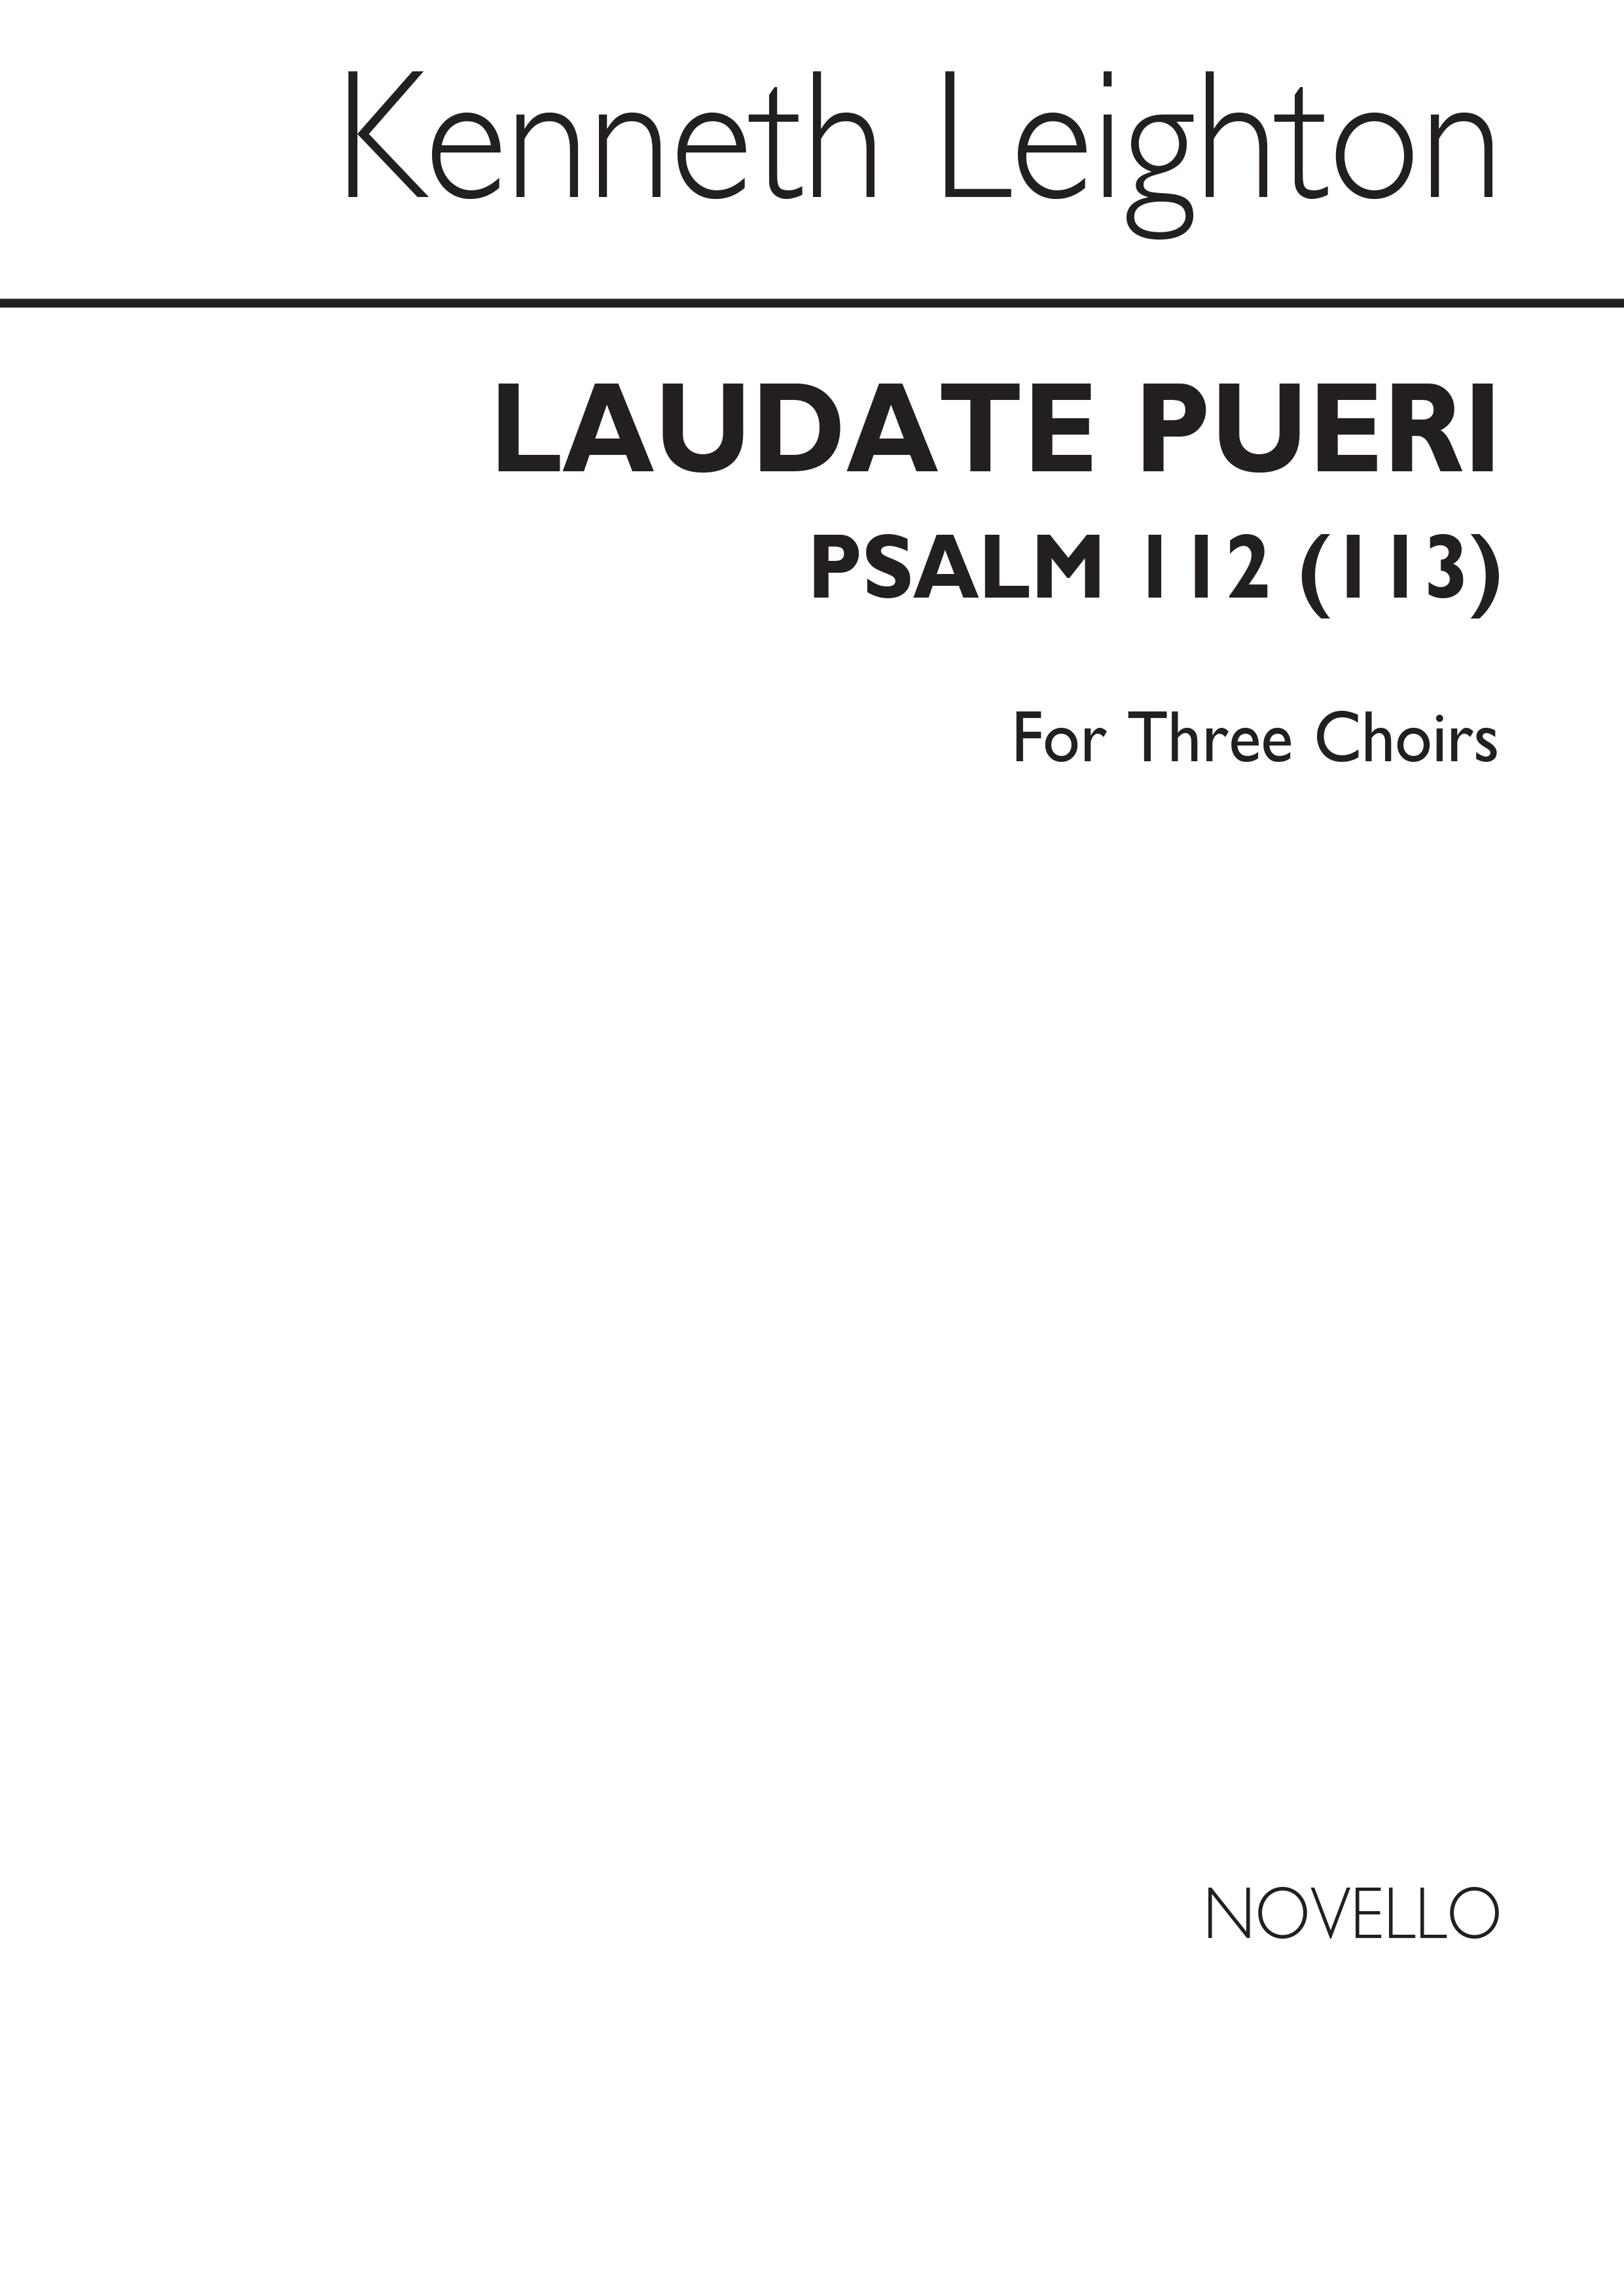 Kenneth Leighton: Laudate Pueri (3 x SATB Choirs)